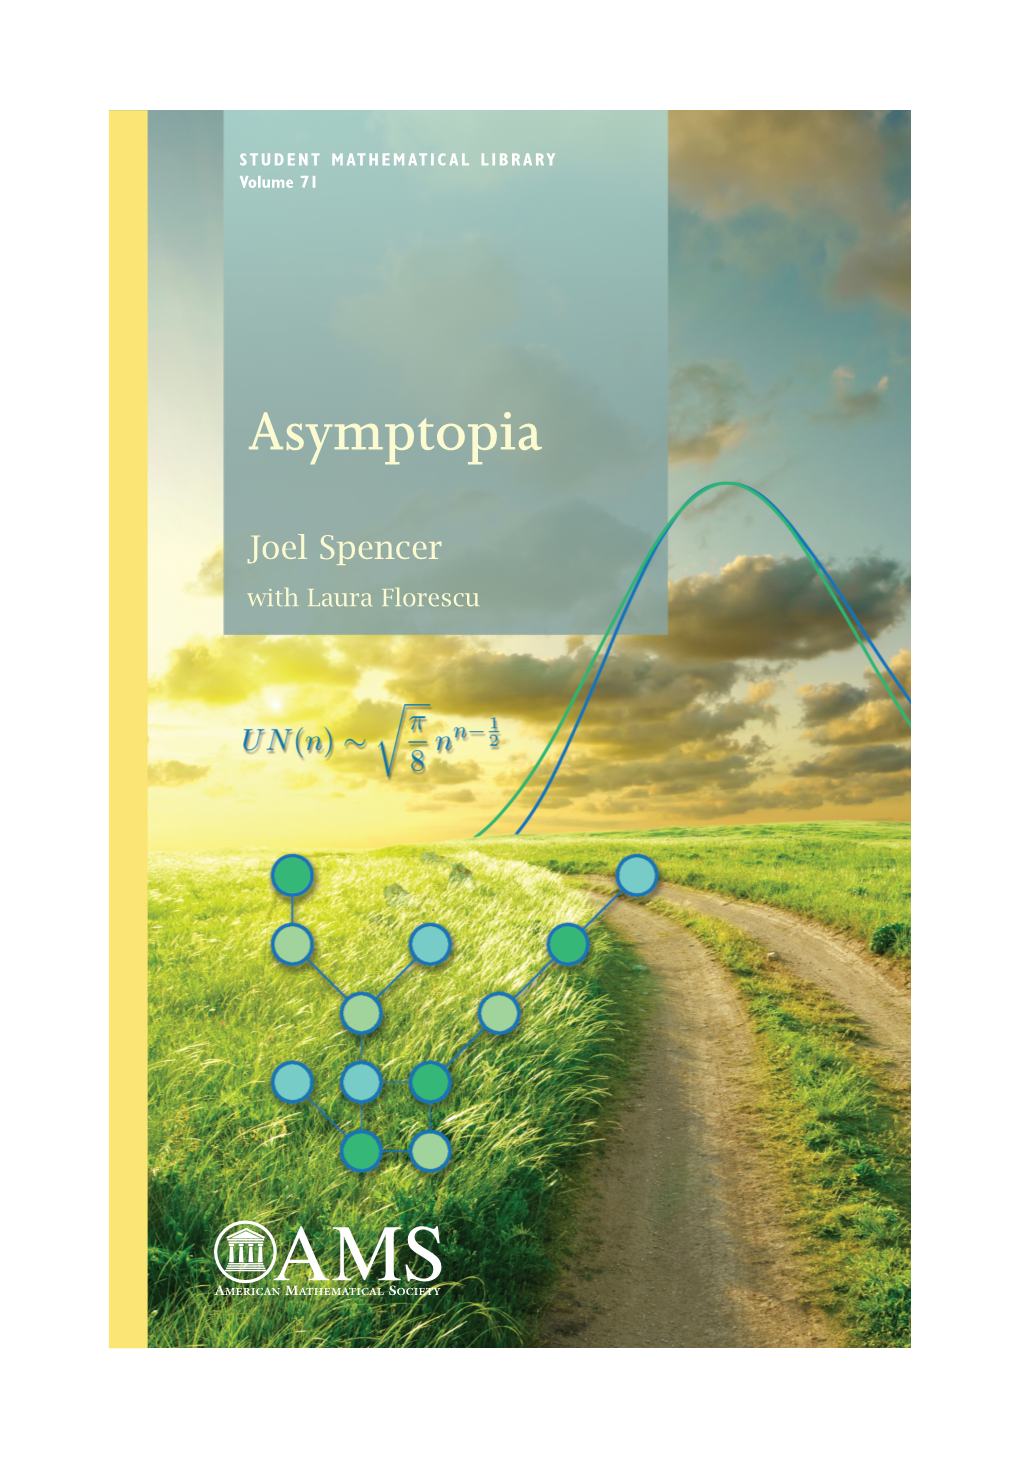 Asymptopia Joel Spencer